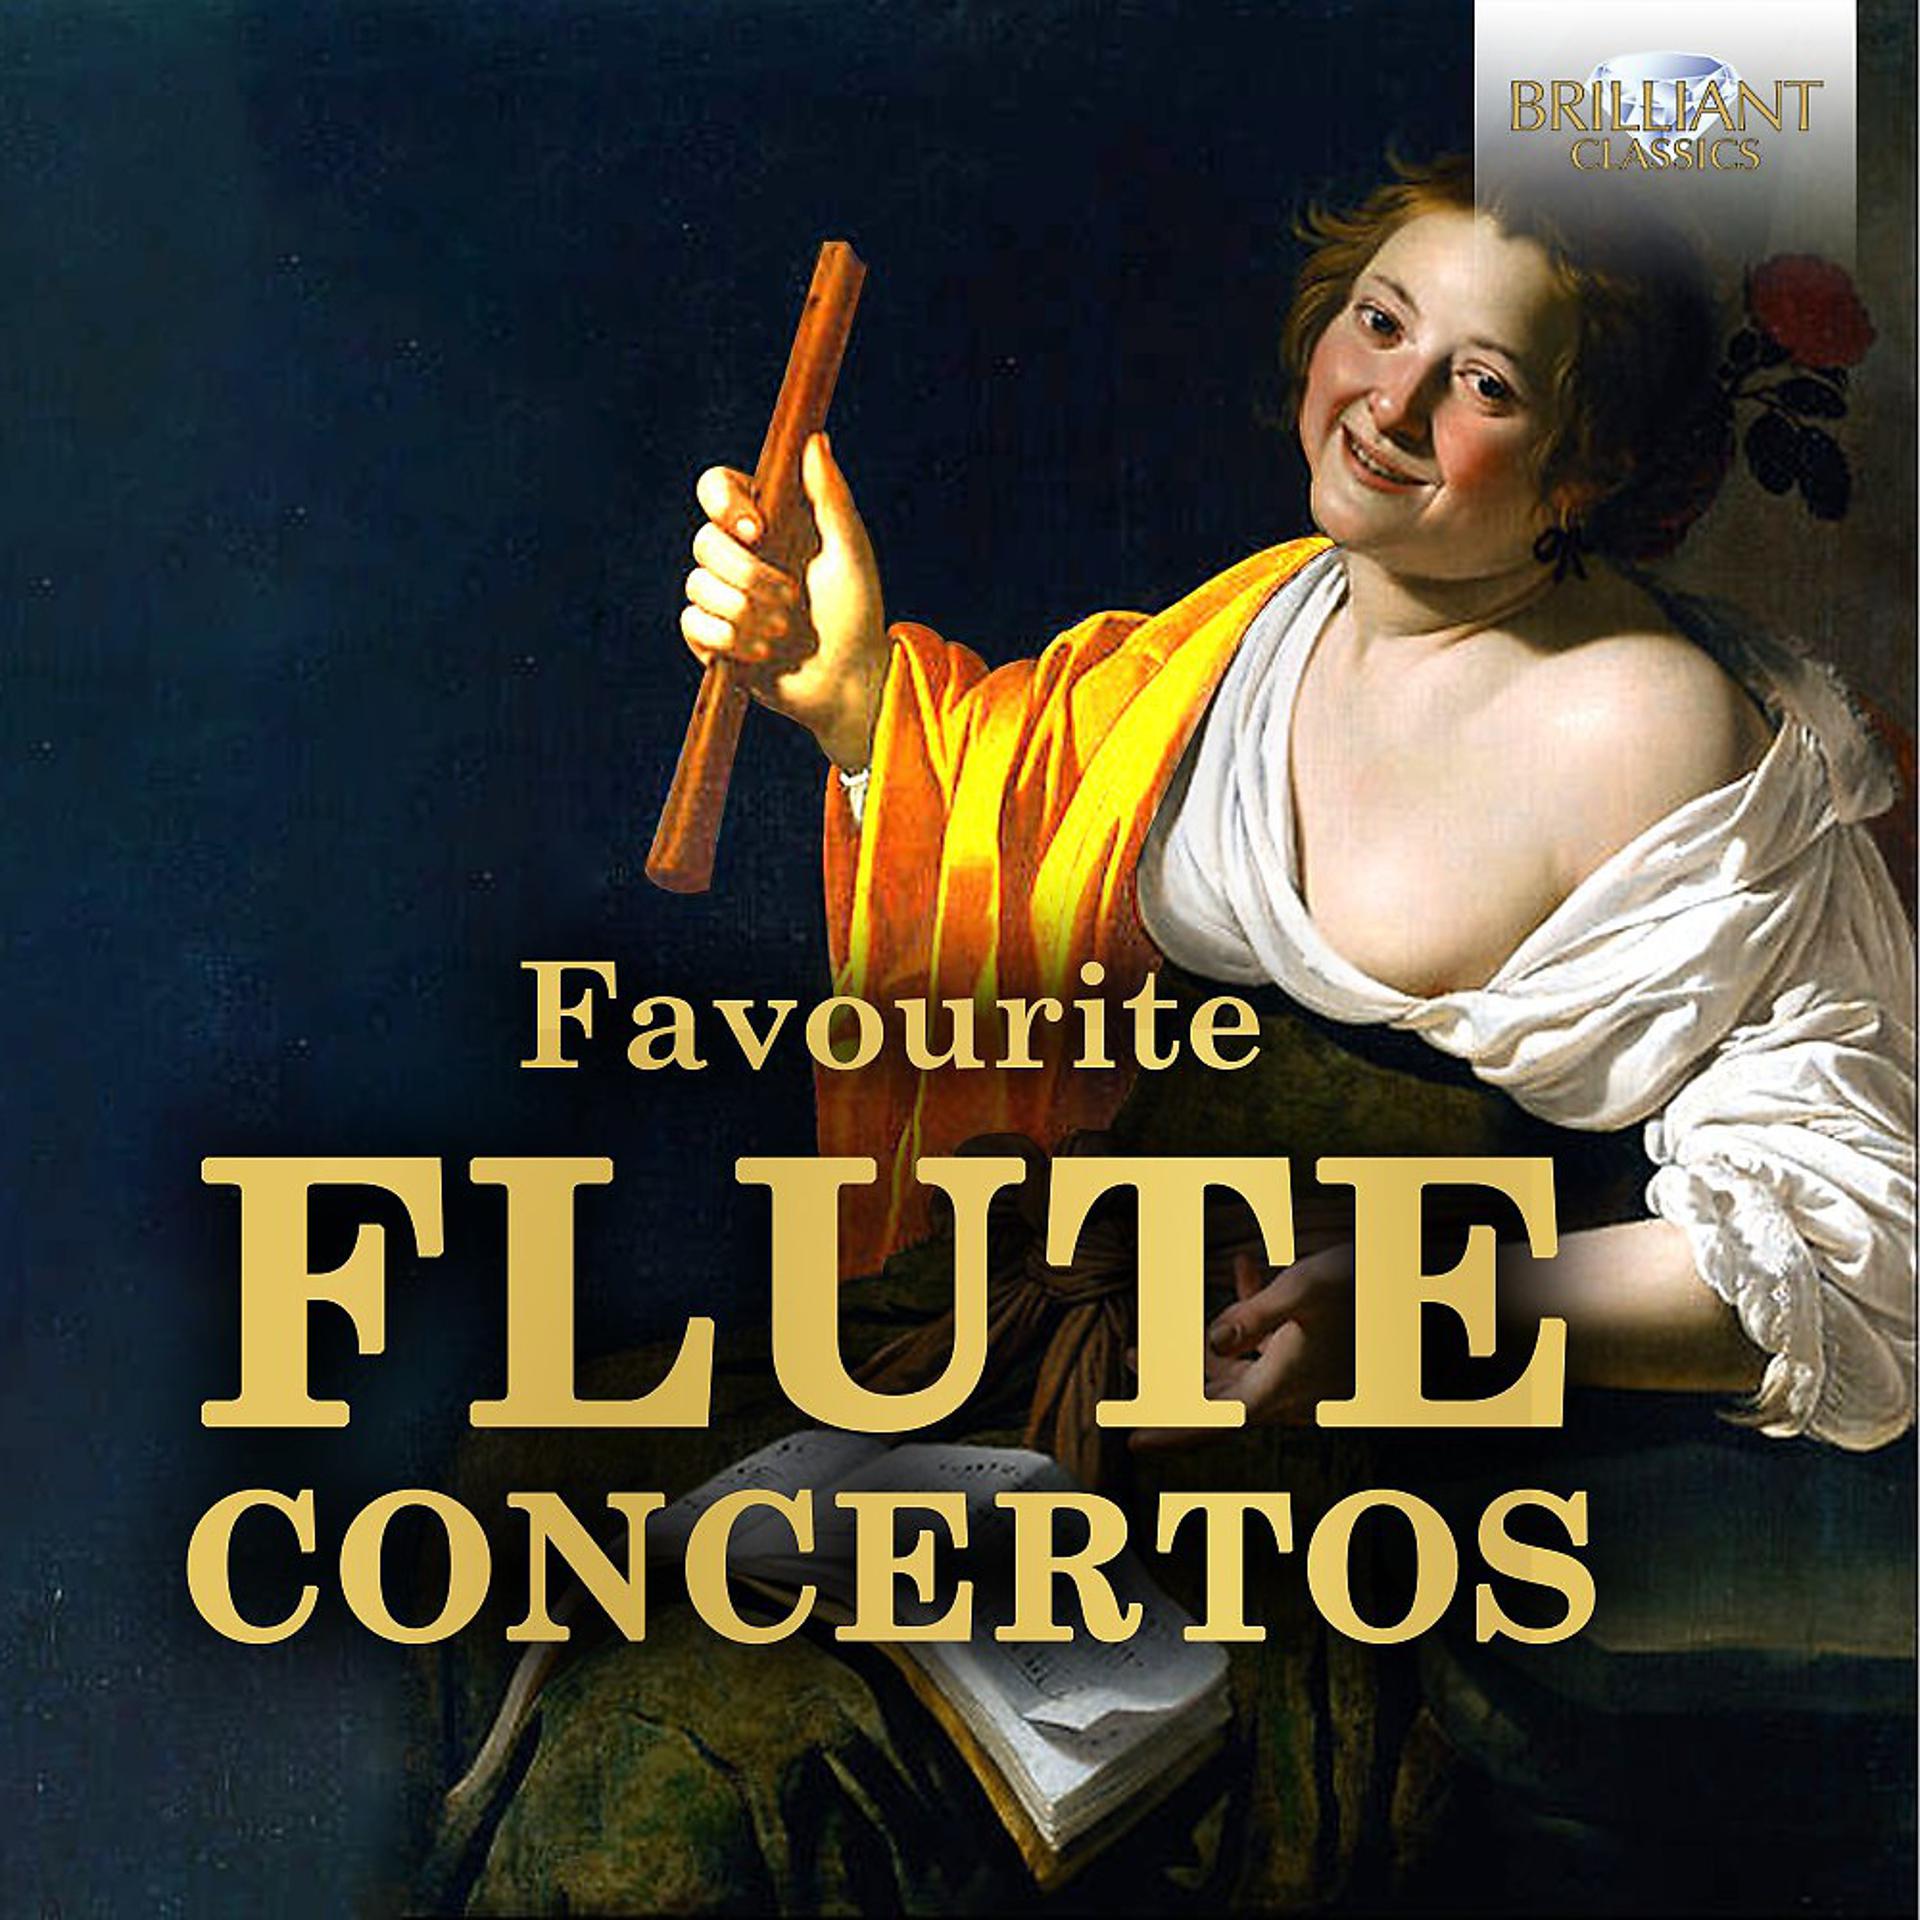 Concord Orchestra 3 декабря 2022. Flute concertos